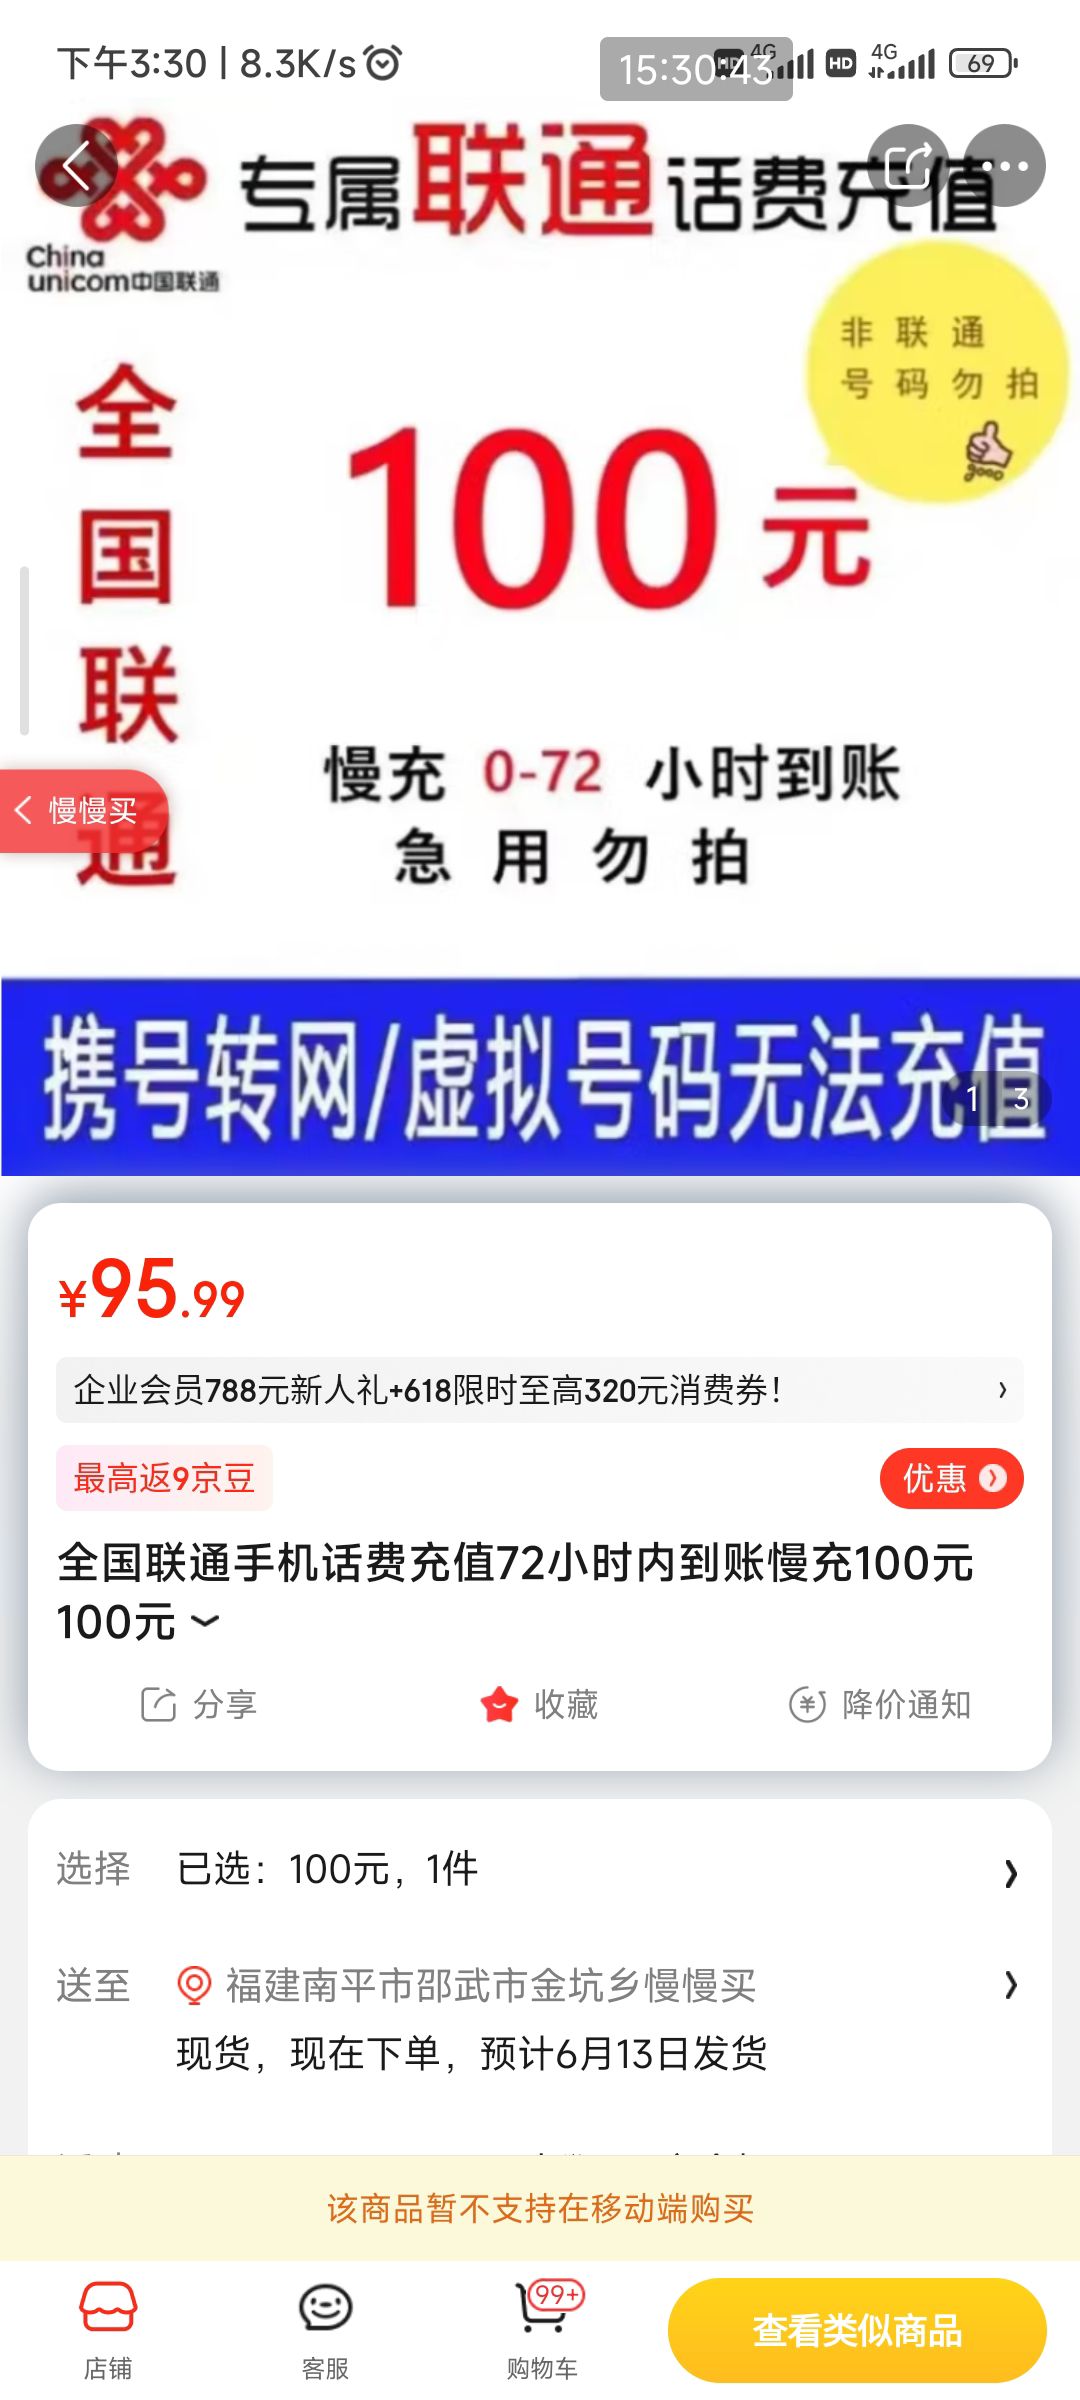 苏宁易购: 中国联通 100元话费充值 72小时内到账 - 价格93.58元 - 值值值